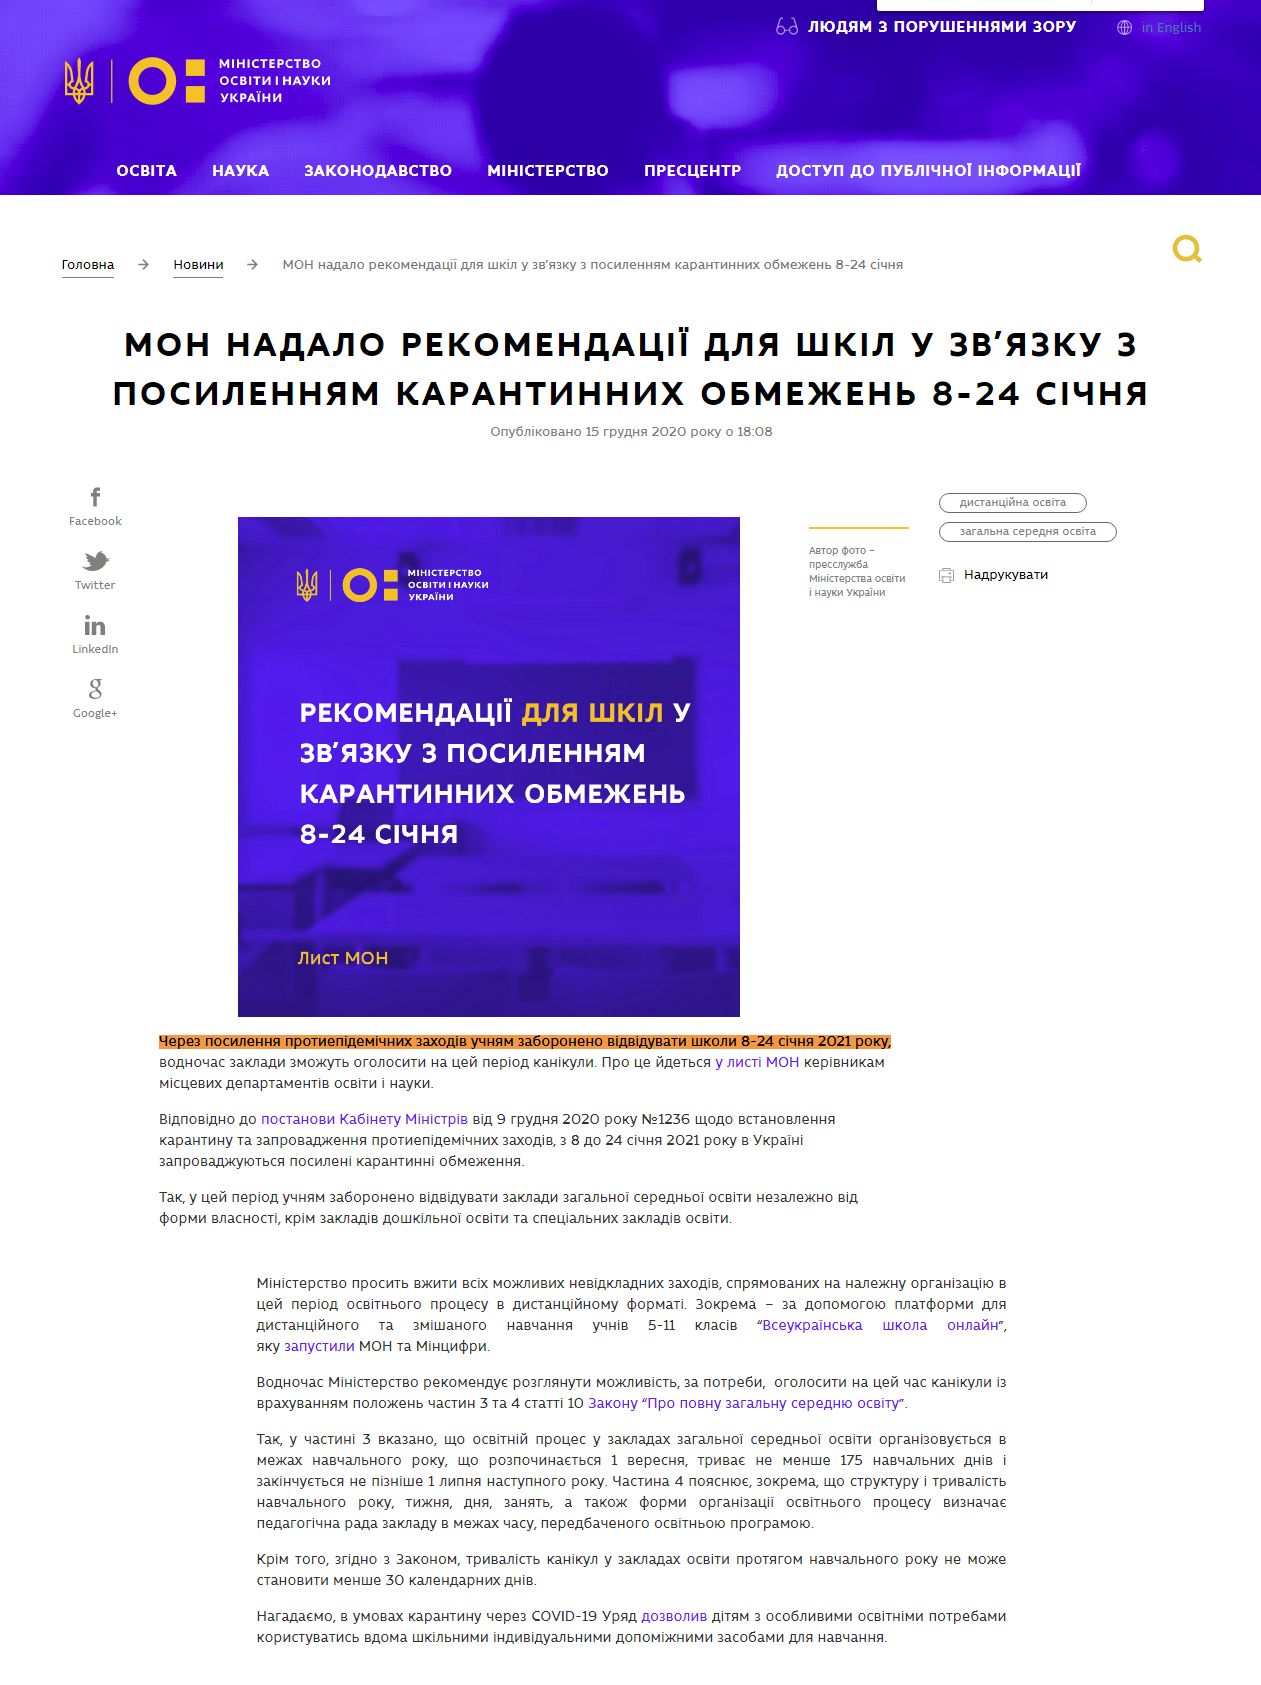 https://mon.gov.ua/ua/news/mon-nadalo-rekomendaciyi-dlya-shkil-u-zvyazku-z-posilennyam-karantinnih-obmezhen-8-24-sichnya